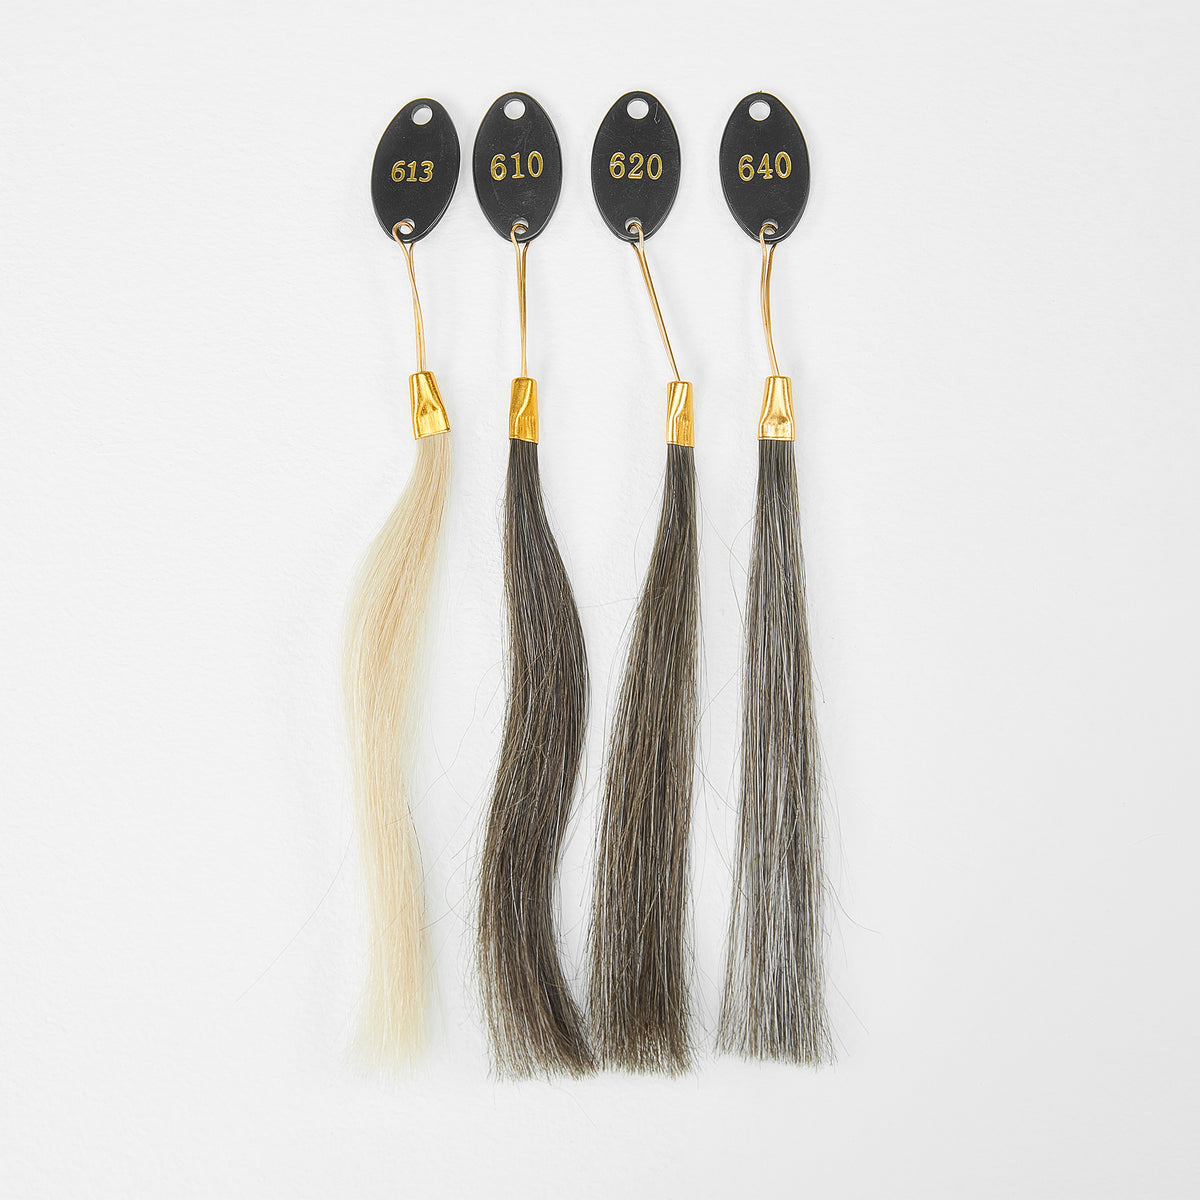 Anello colorato per sistema di capelli | Campione di capelli Toupee per abbinare il colore dei capelli